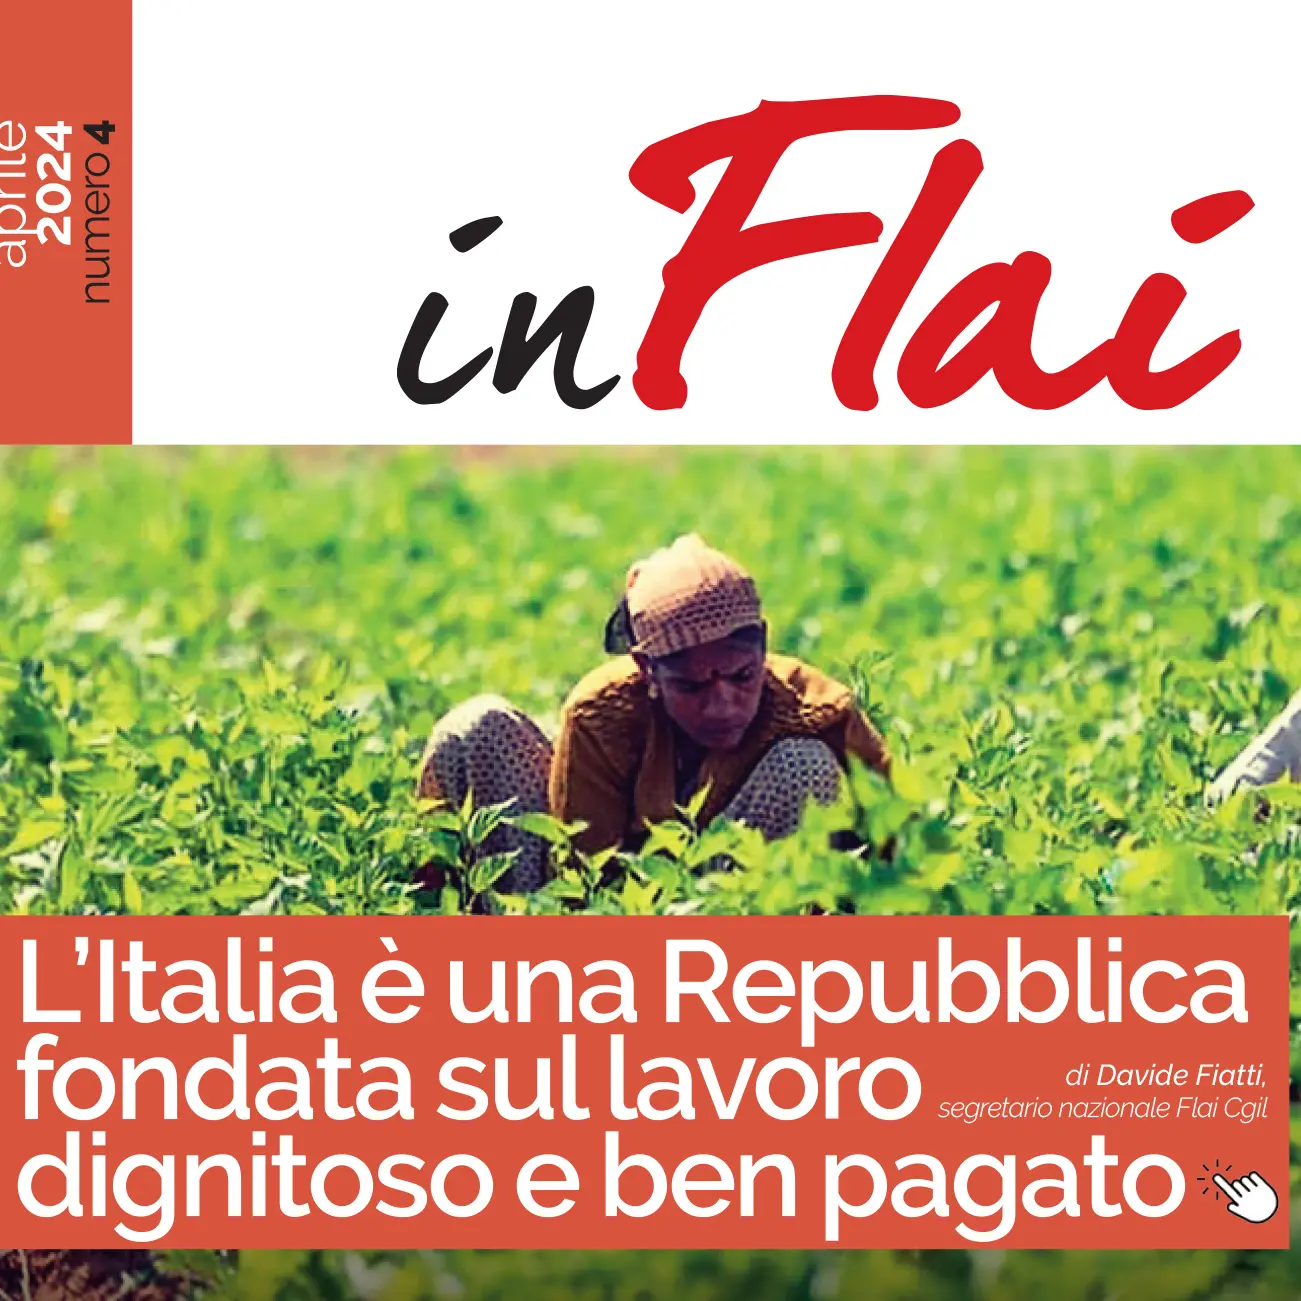 L’Italia è una Repubblica fondata sul lavoro dignitoso e ben pagato